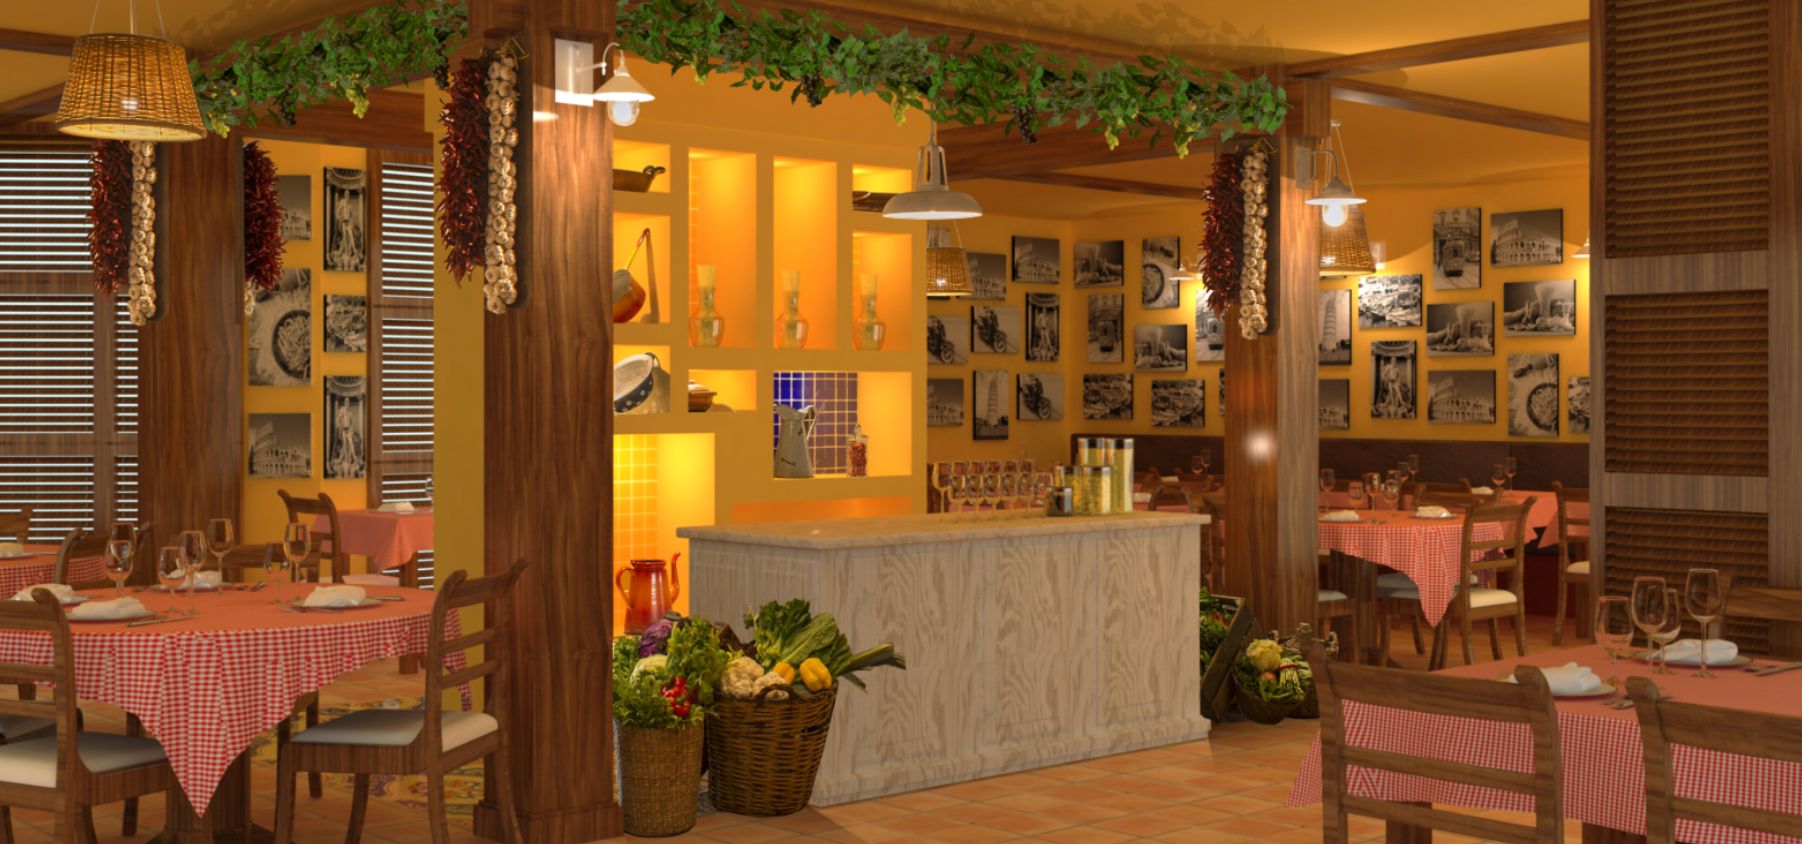 مطعم ريسيتا يستعد لإفتتاح أبوابه في فندق فور بوينتس باي شيراتون بر دبي